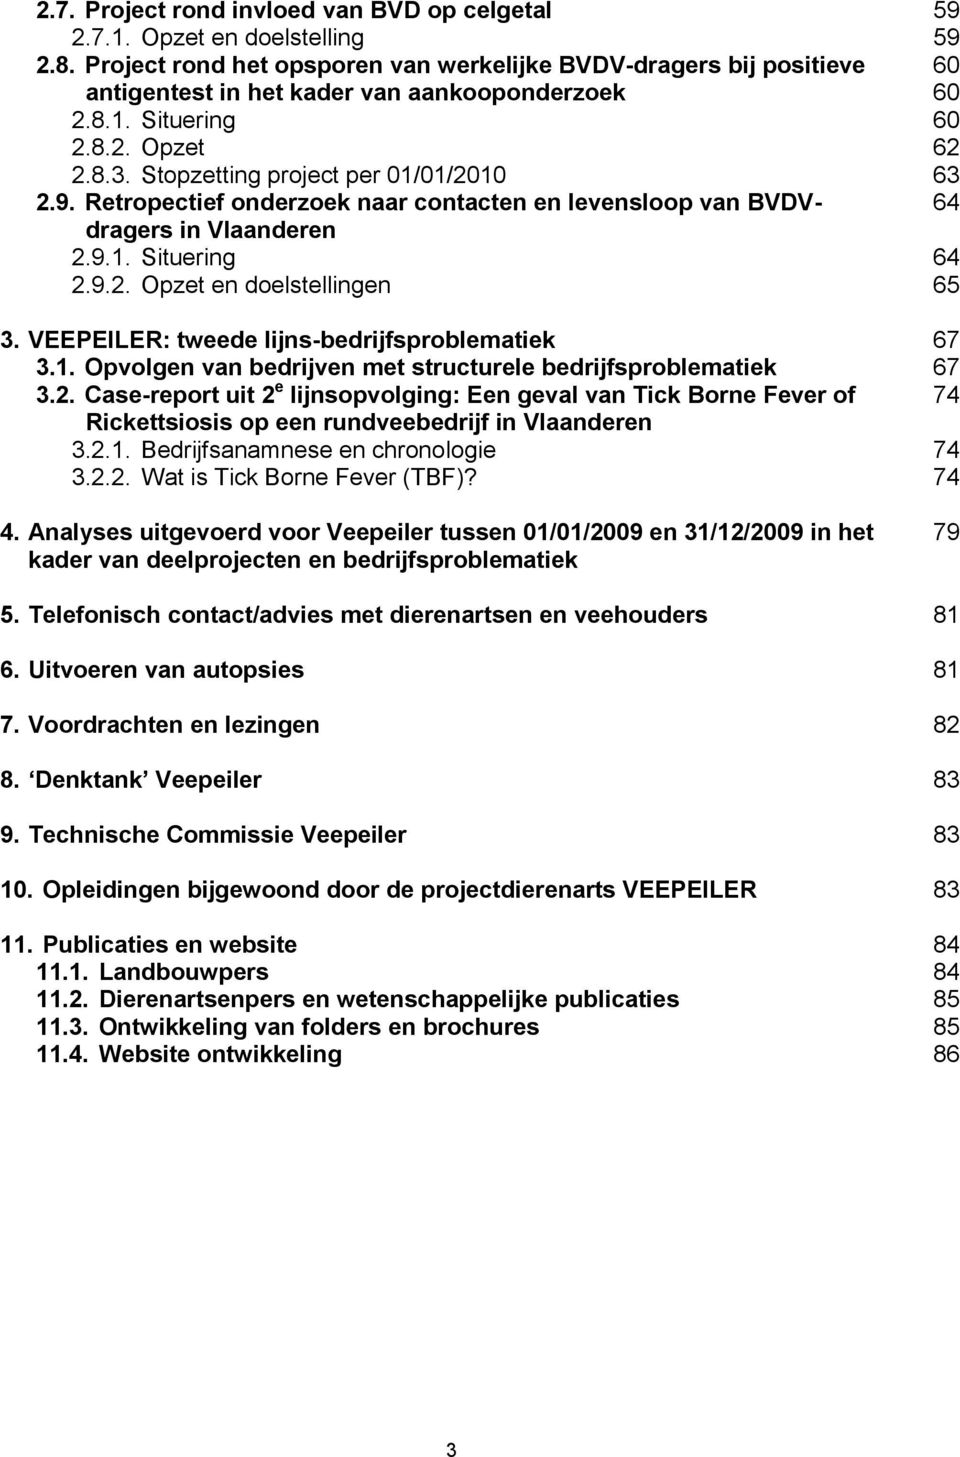 Stopzetting project per 01/01/2010 63 2.9. Retropectief onderzoek naar contacten en levensloop van BVDV- 64 dragers in Vlaanderen 2.9.1. Situering 64 2.9.2. Opzet en doelstellingen 65 3.